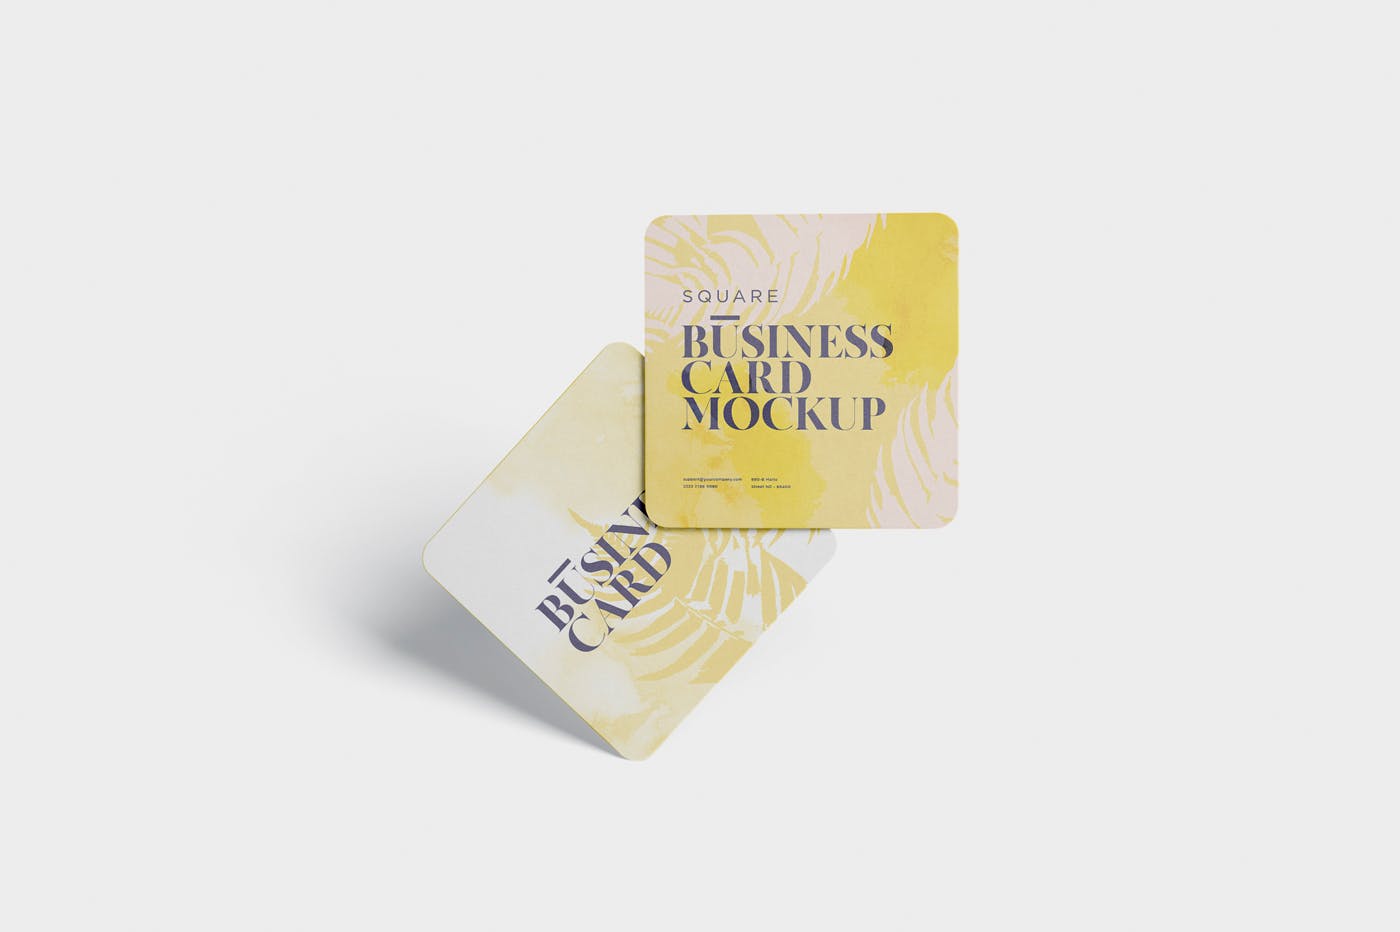 圆角设计风格企业名片效果图素材库精选 Business Card Mockup – Square Round Corner插图(2)